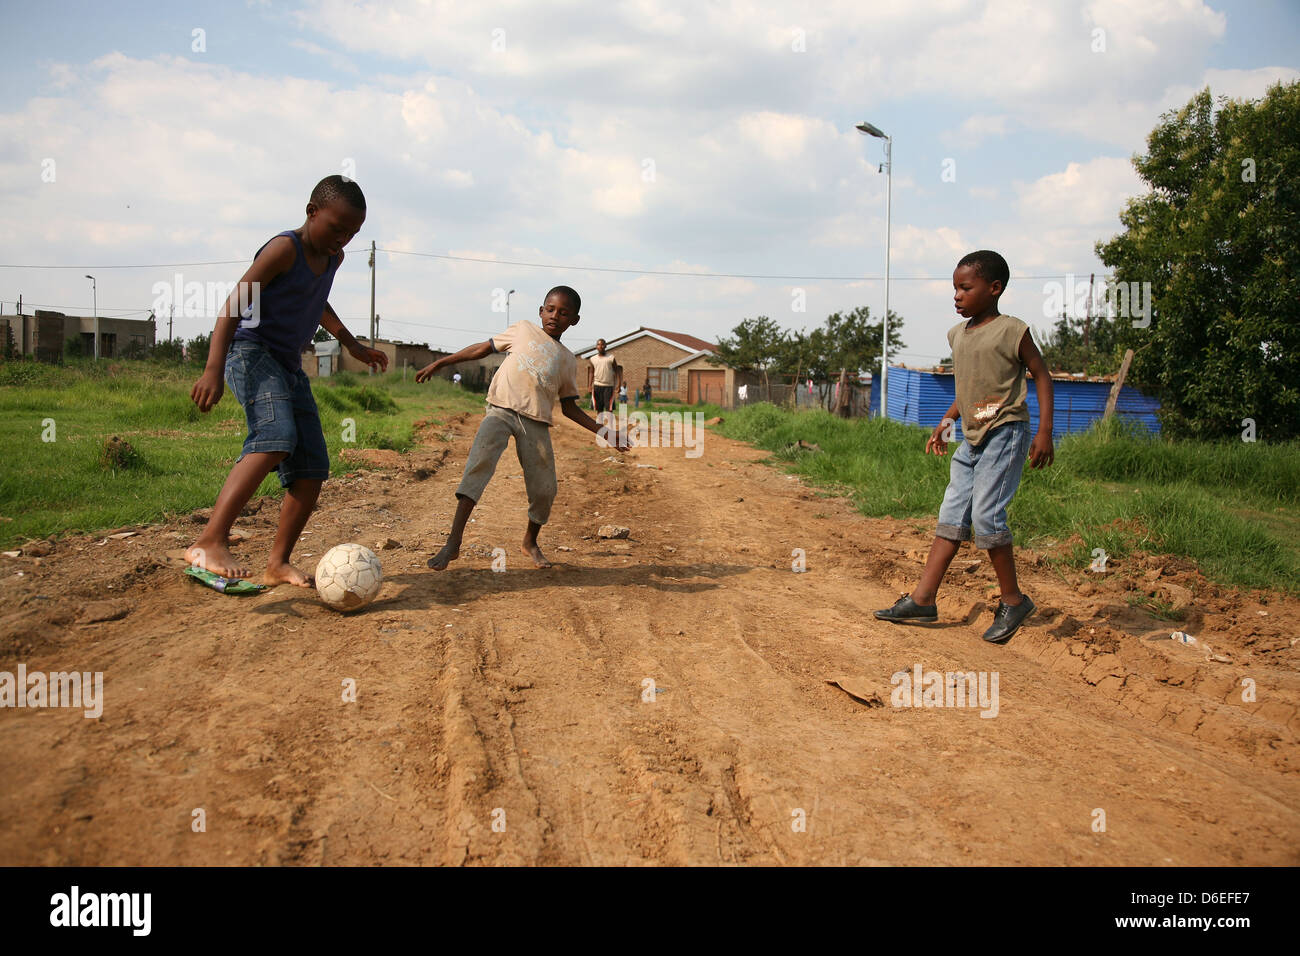 African ragazzi giocare a calcio per strada sterrata in un piccolo insediamento rurale Foto Stock